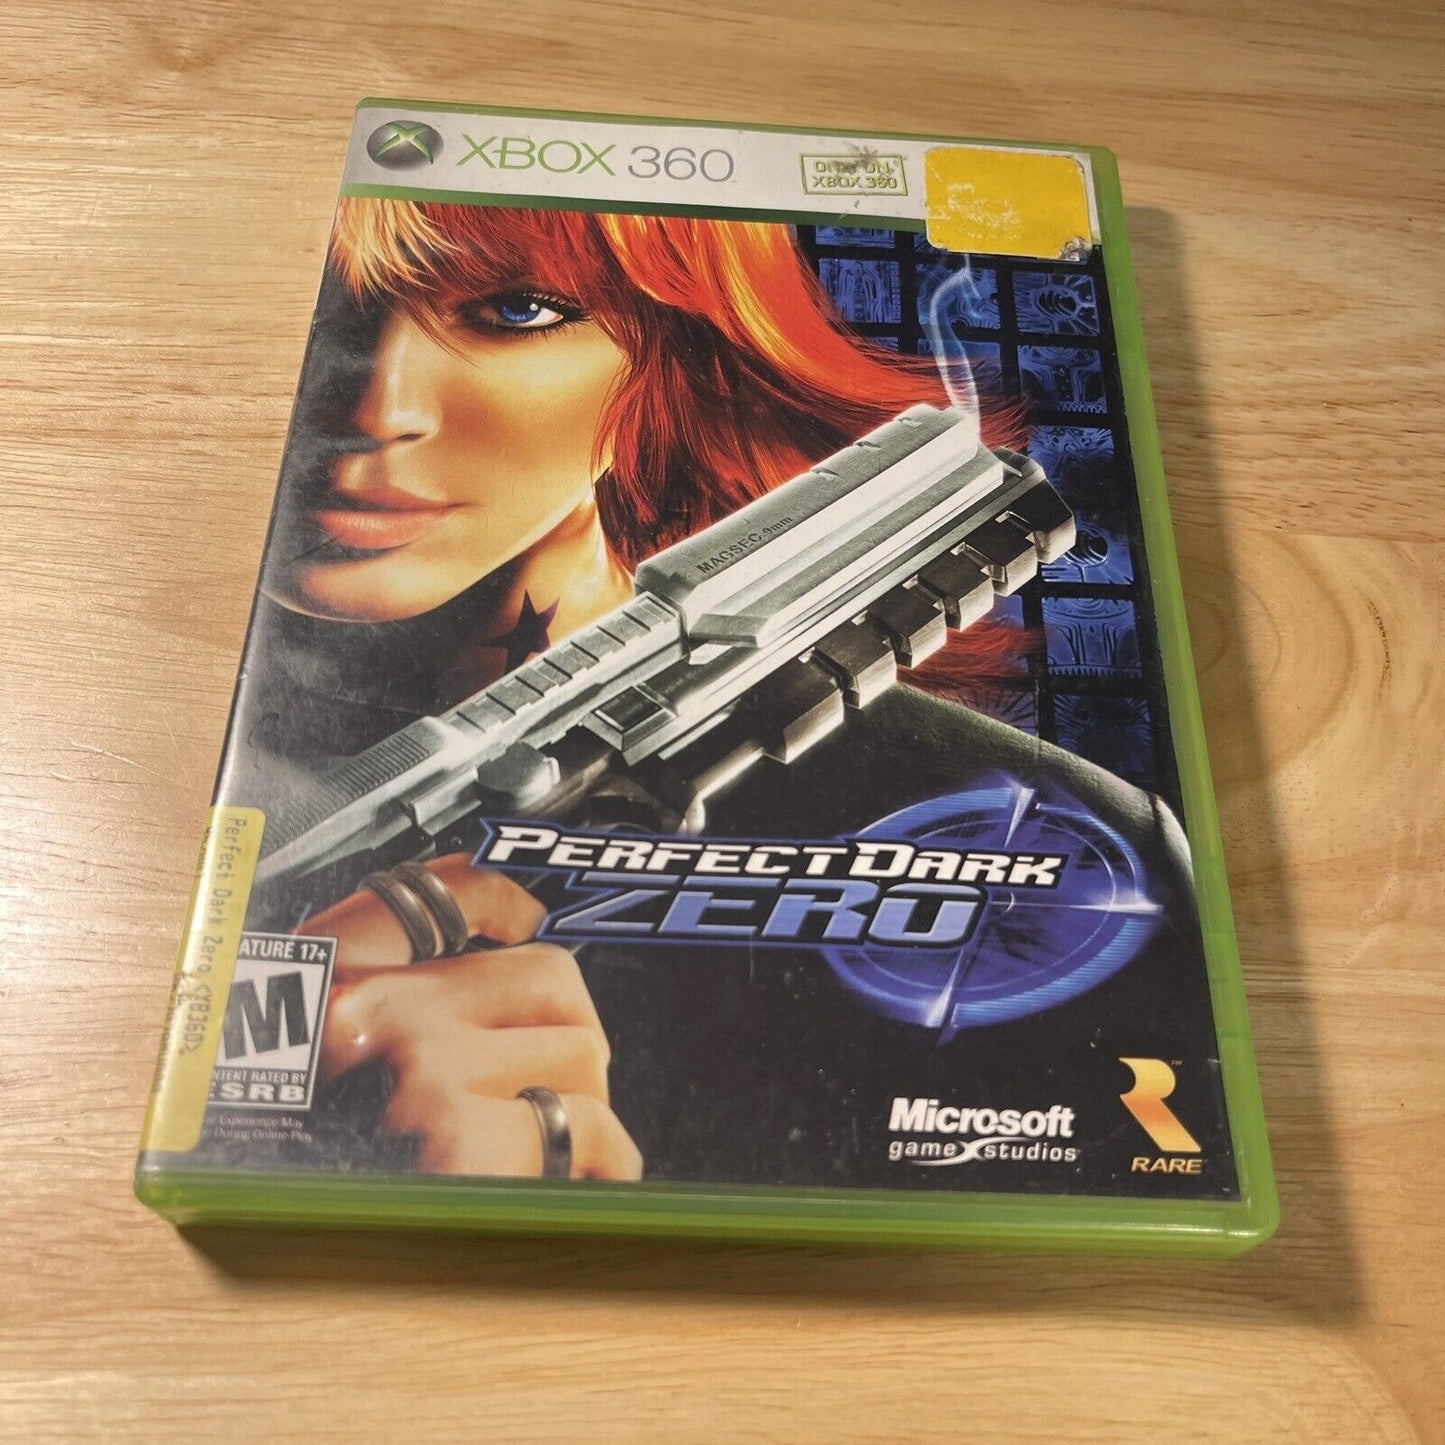 Perfect Dark Zero Xbox 360 CIB Complete Tested & Working